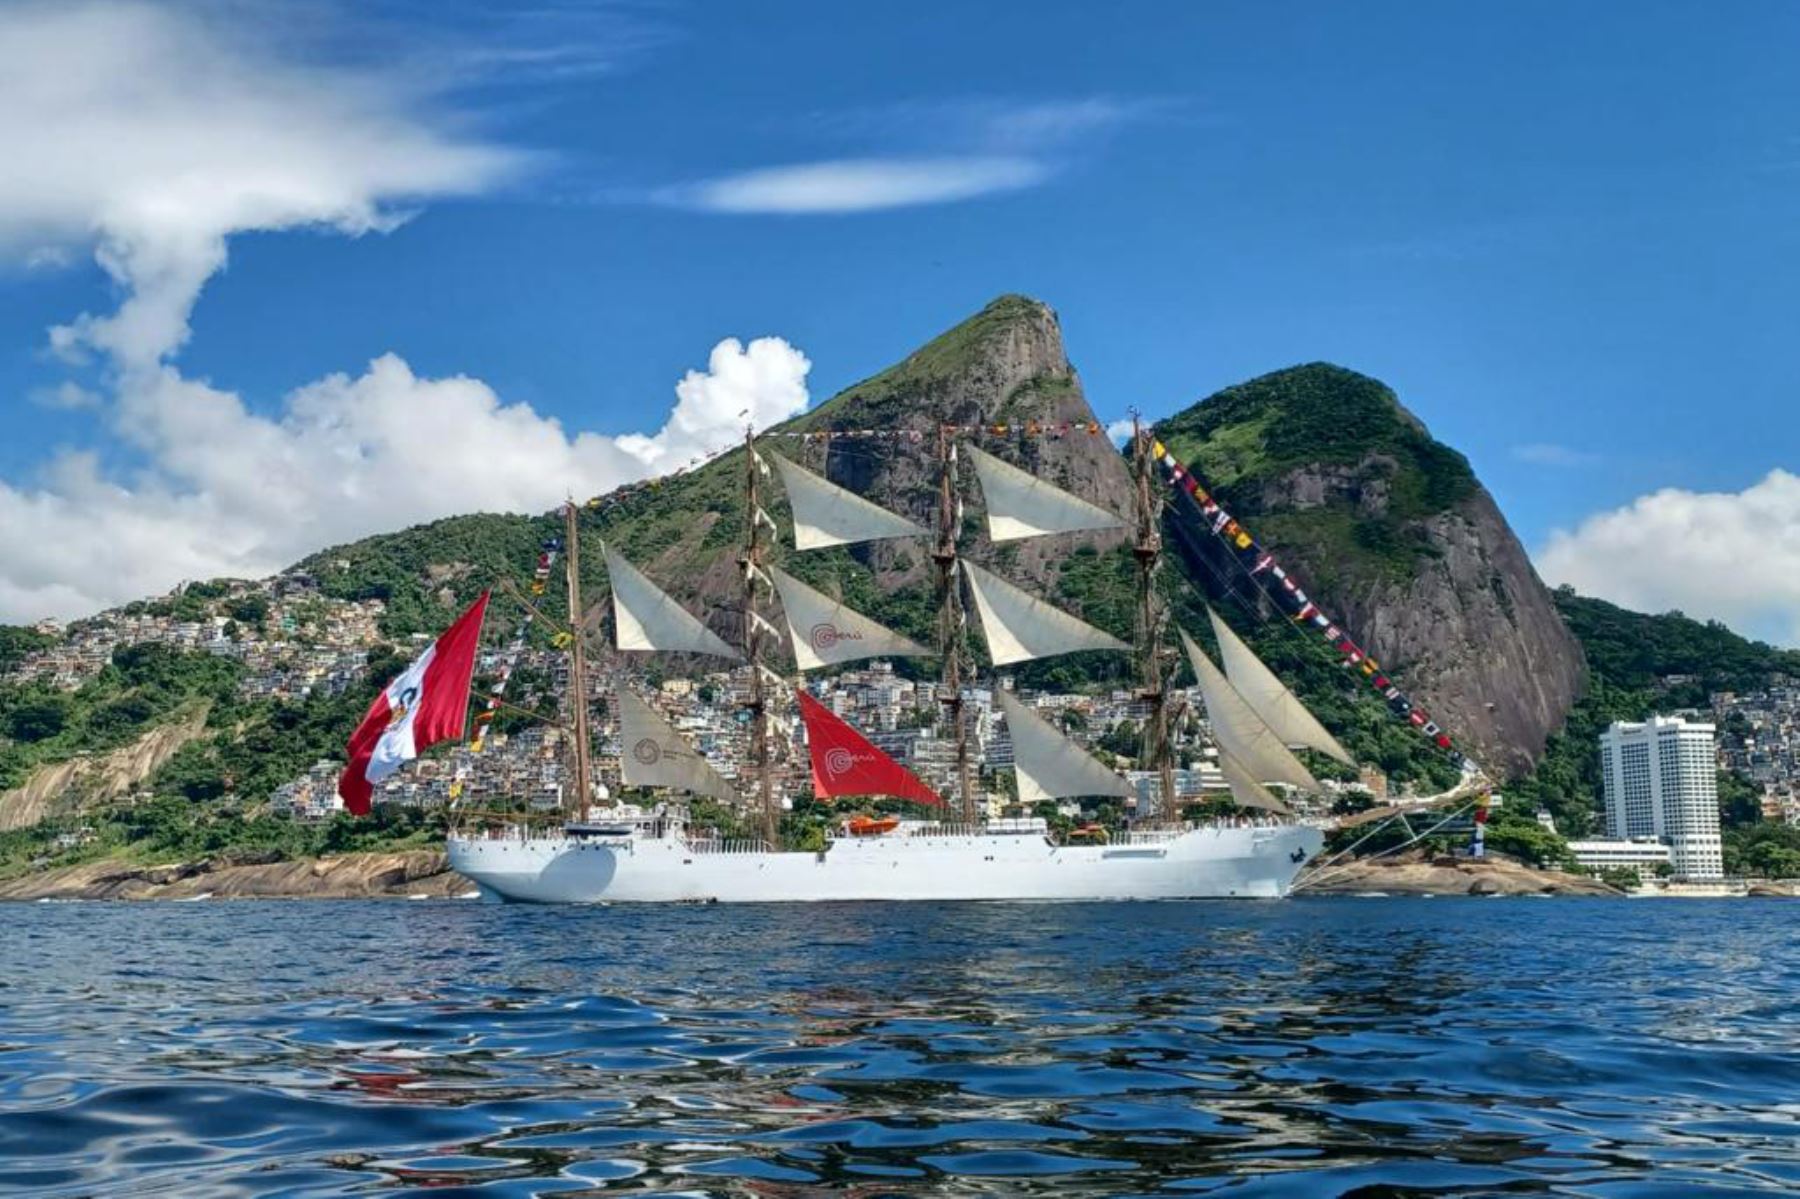 El BAP Unión llegó a las costas de Rio de Janeiro para participar en el evento “Velas Latinoamérica”, que forma parte de las conmemoraciones por el Bicentenario de la Independencia del Brasil.  Foto: Marina de Guerra del Perú